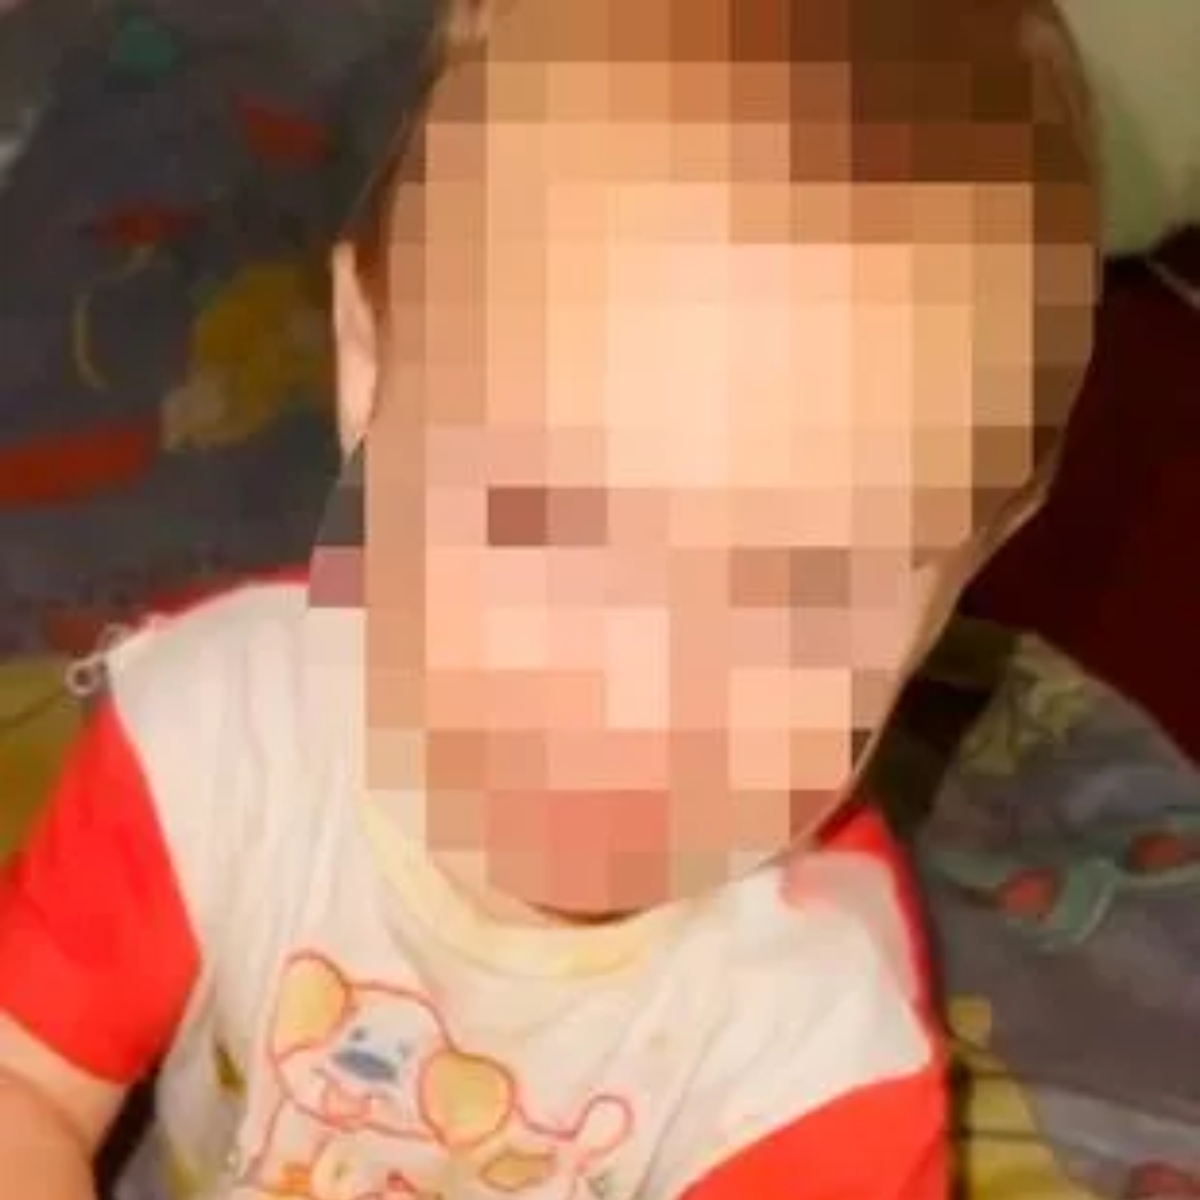  Mãe filma agressão contra bebê: 'Agradeça ao pai por ter se tornado uma aberração' 